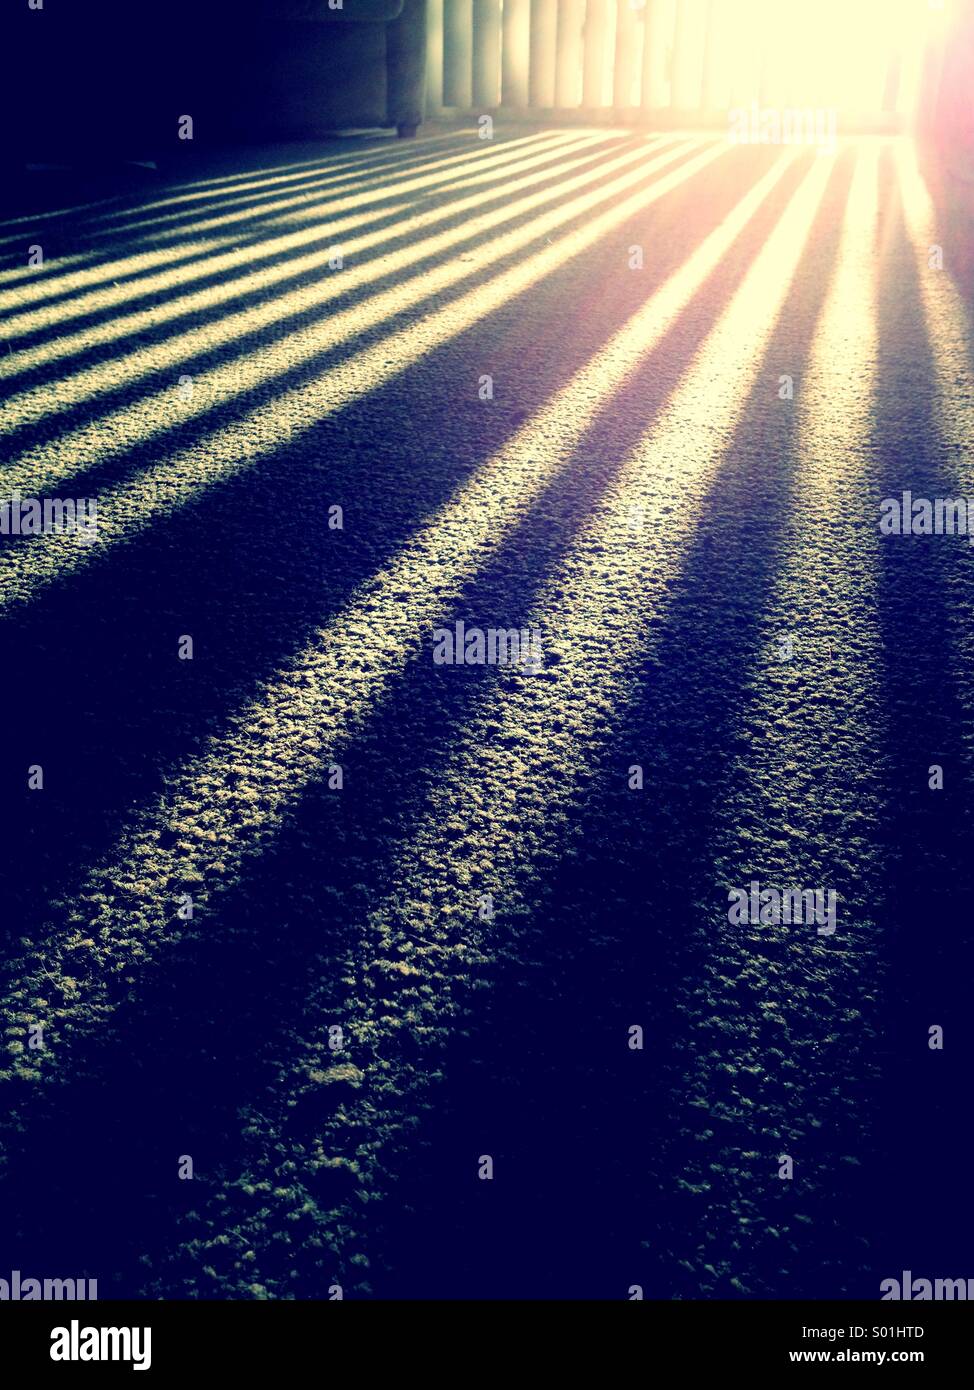 La luz del sol a través de las persianas Foto de stock